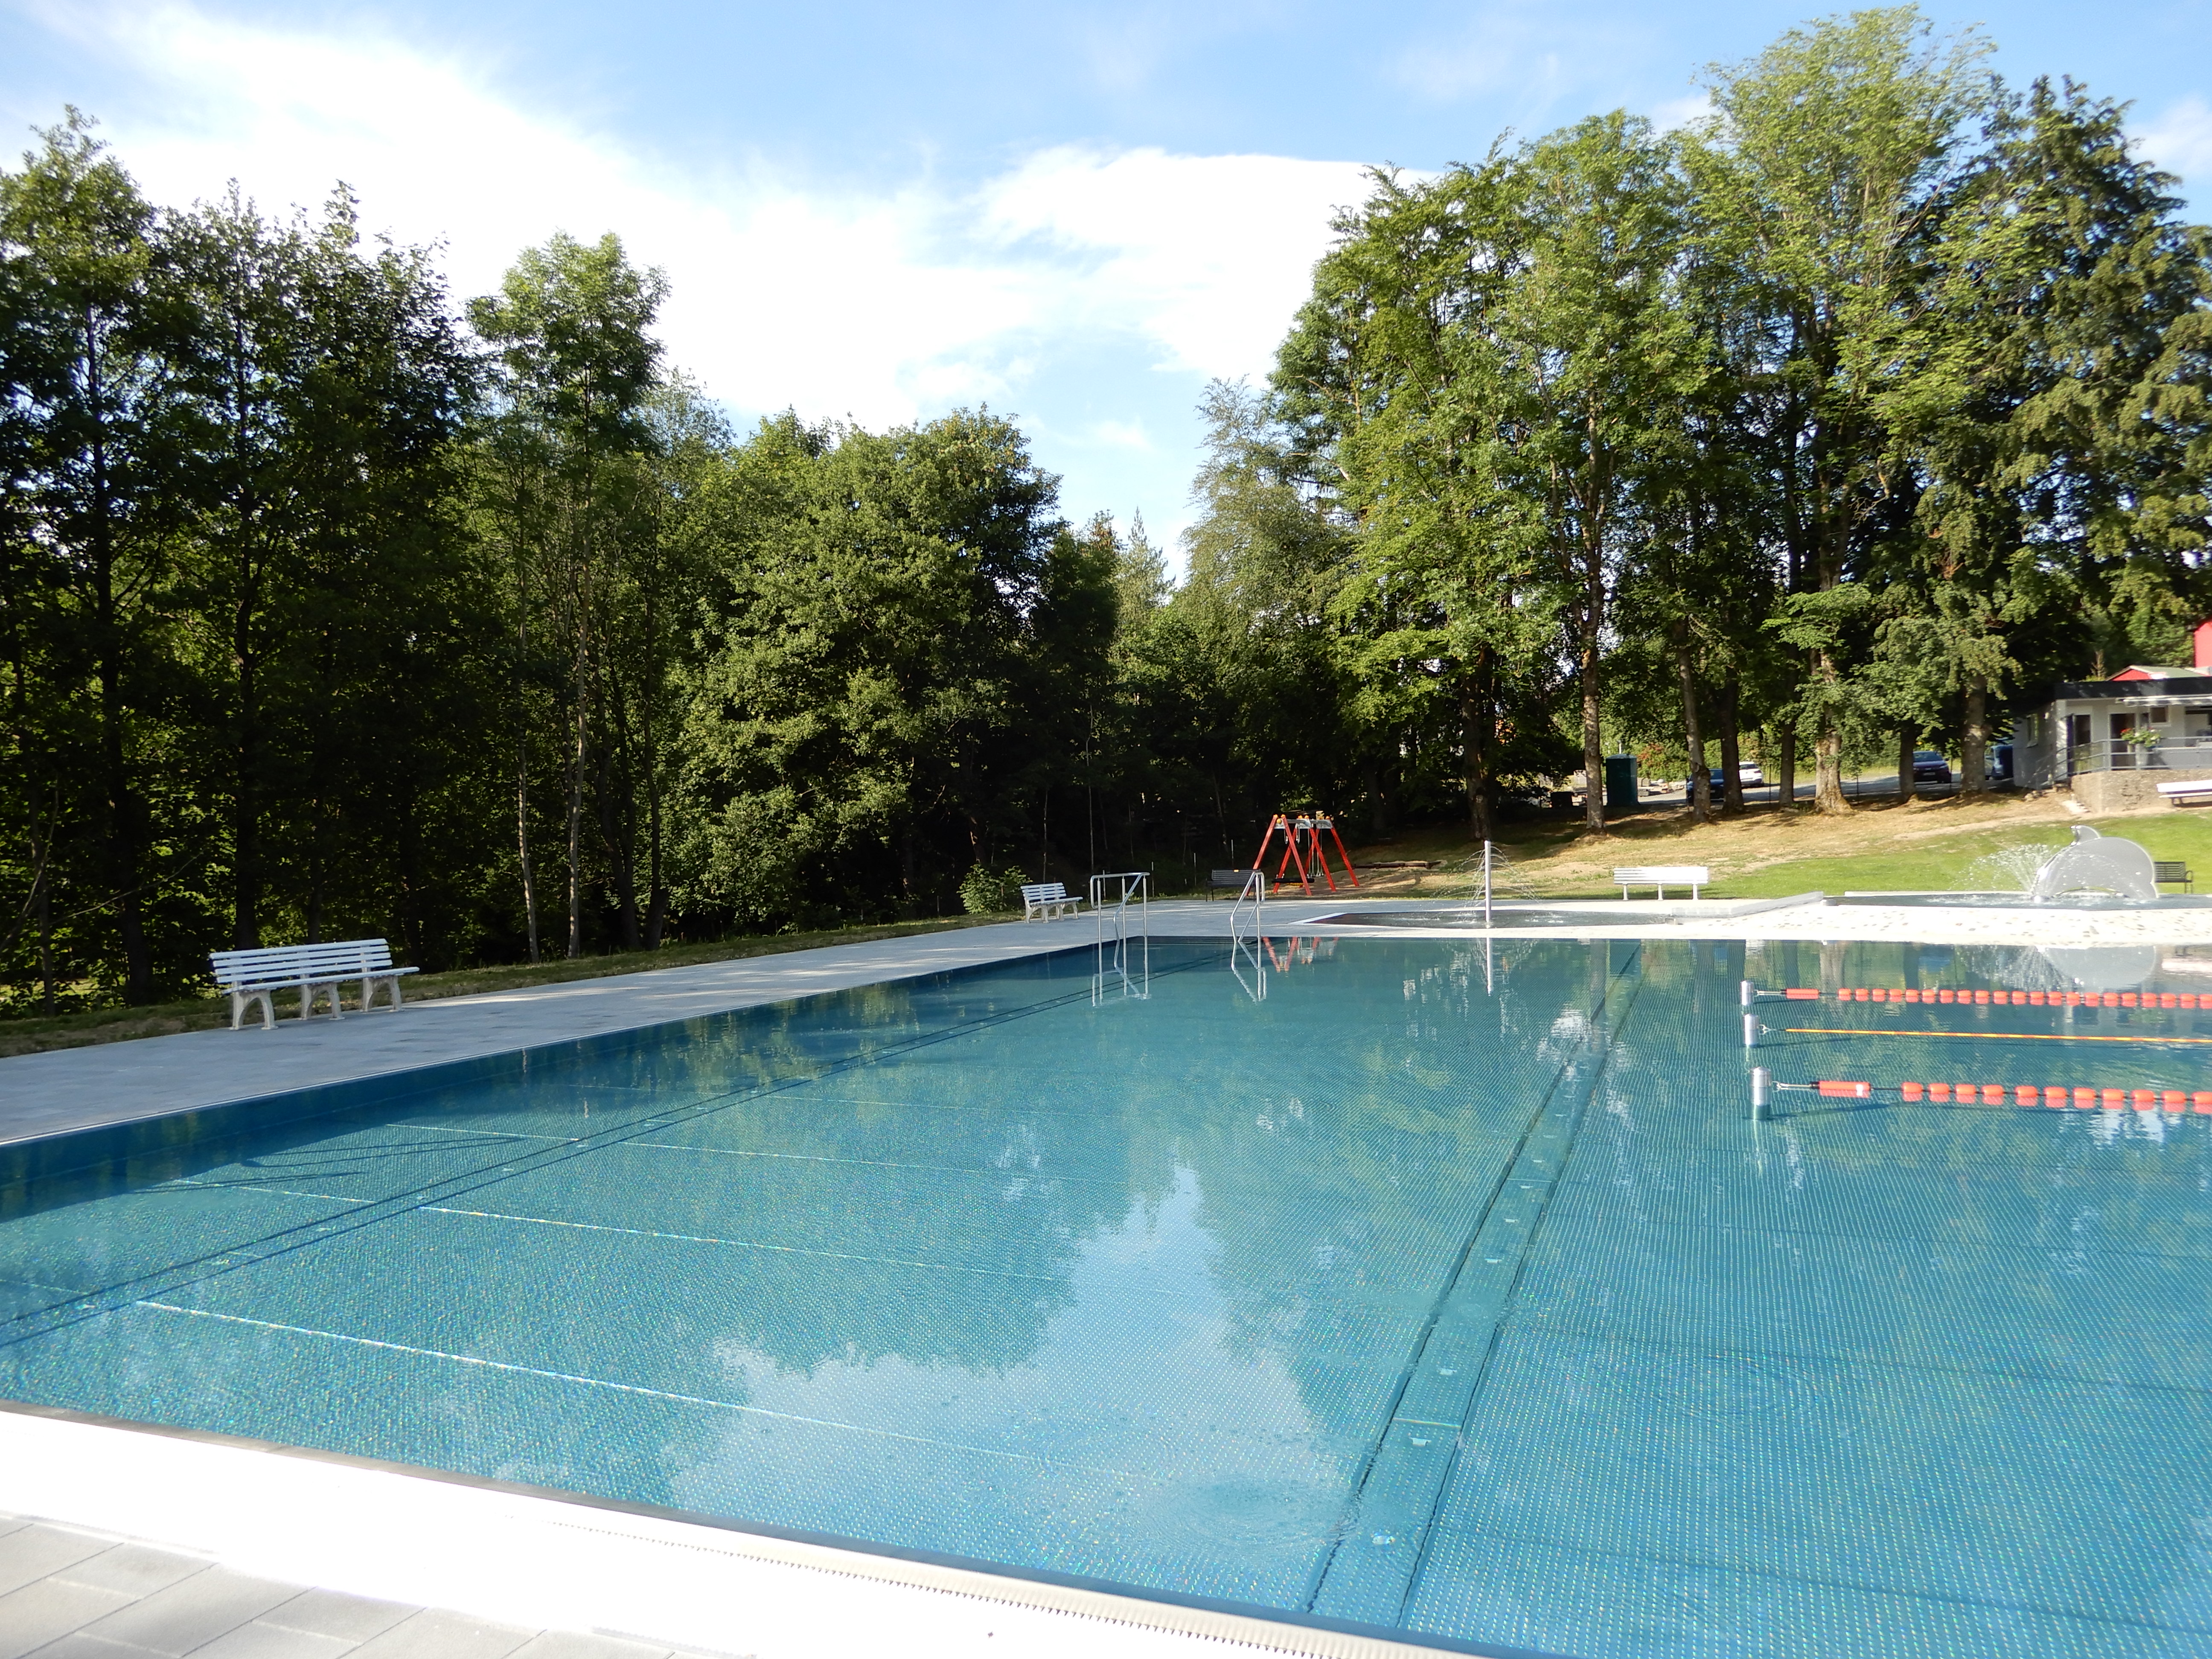 Auf dem Bild ist ein Schwimmbecken unter freiem Himmel zu sehen.